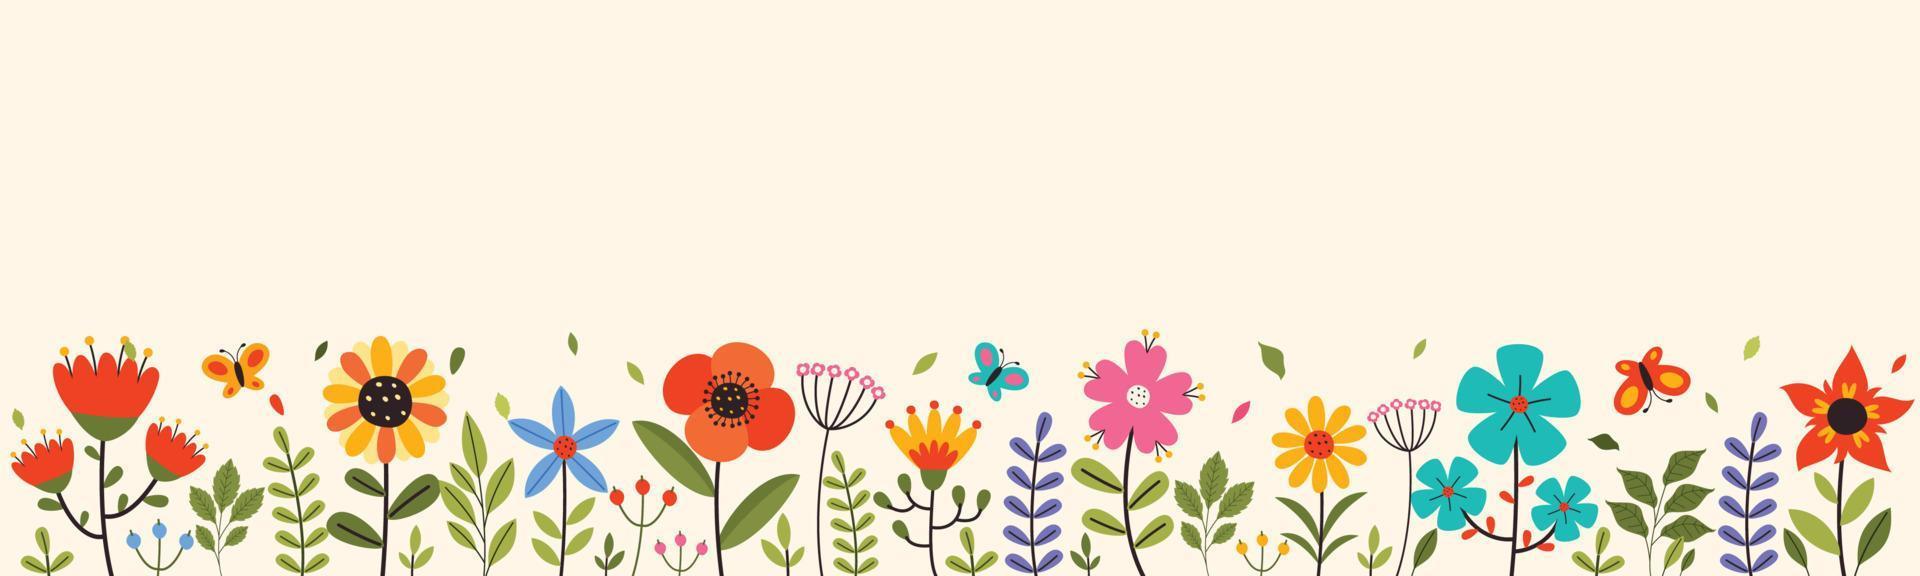 diseño de temporada de primavera con flores vector